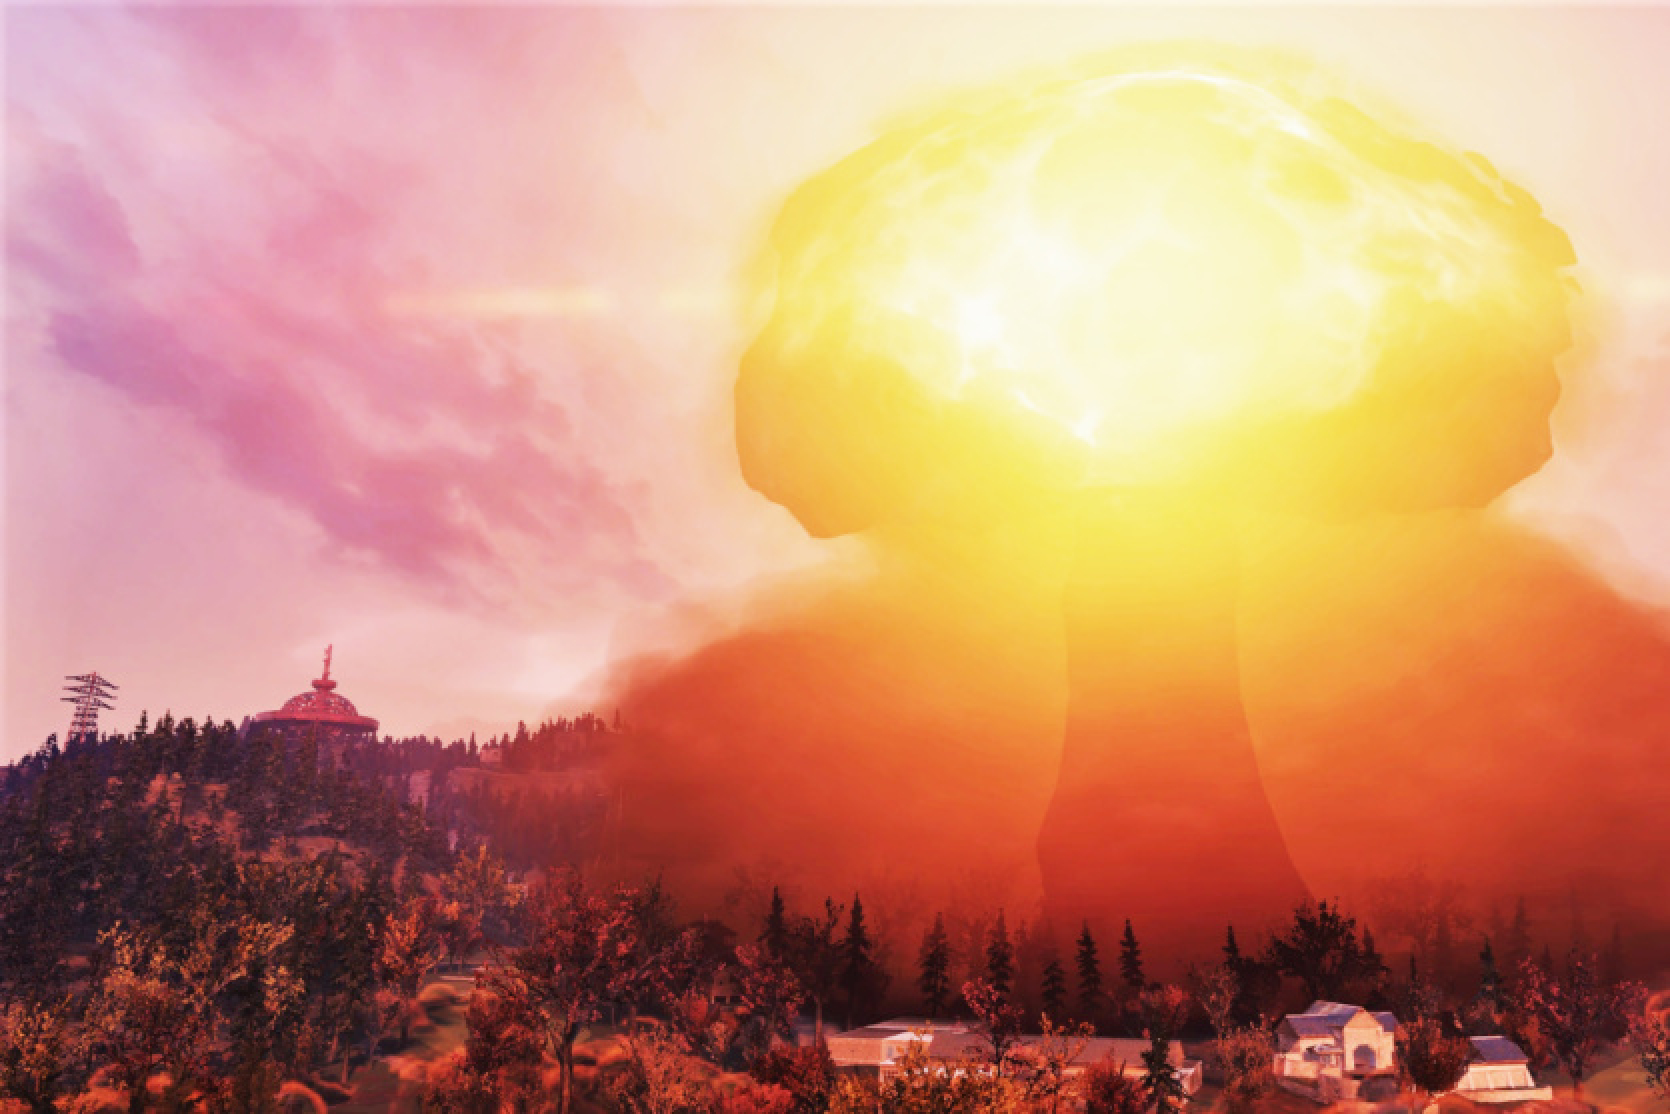 Fils Spensers ir pabeidzis Fallout 76 kvestu "Officer on Deck" un gatavo kodolreakciju spēles iznīcinātajai apmetnei.